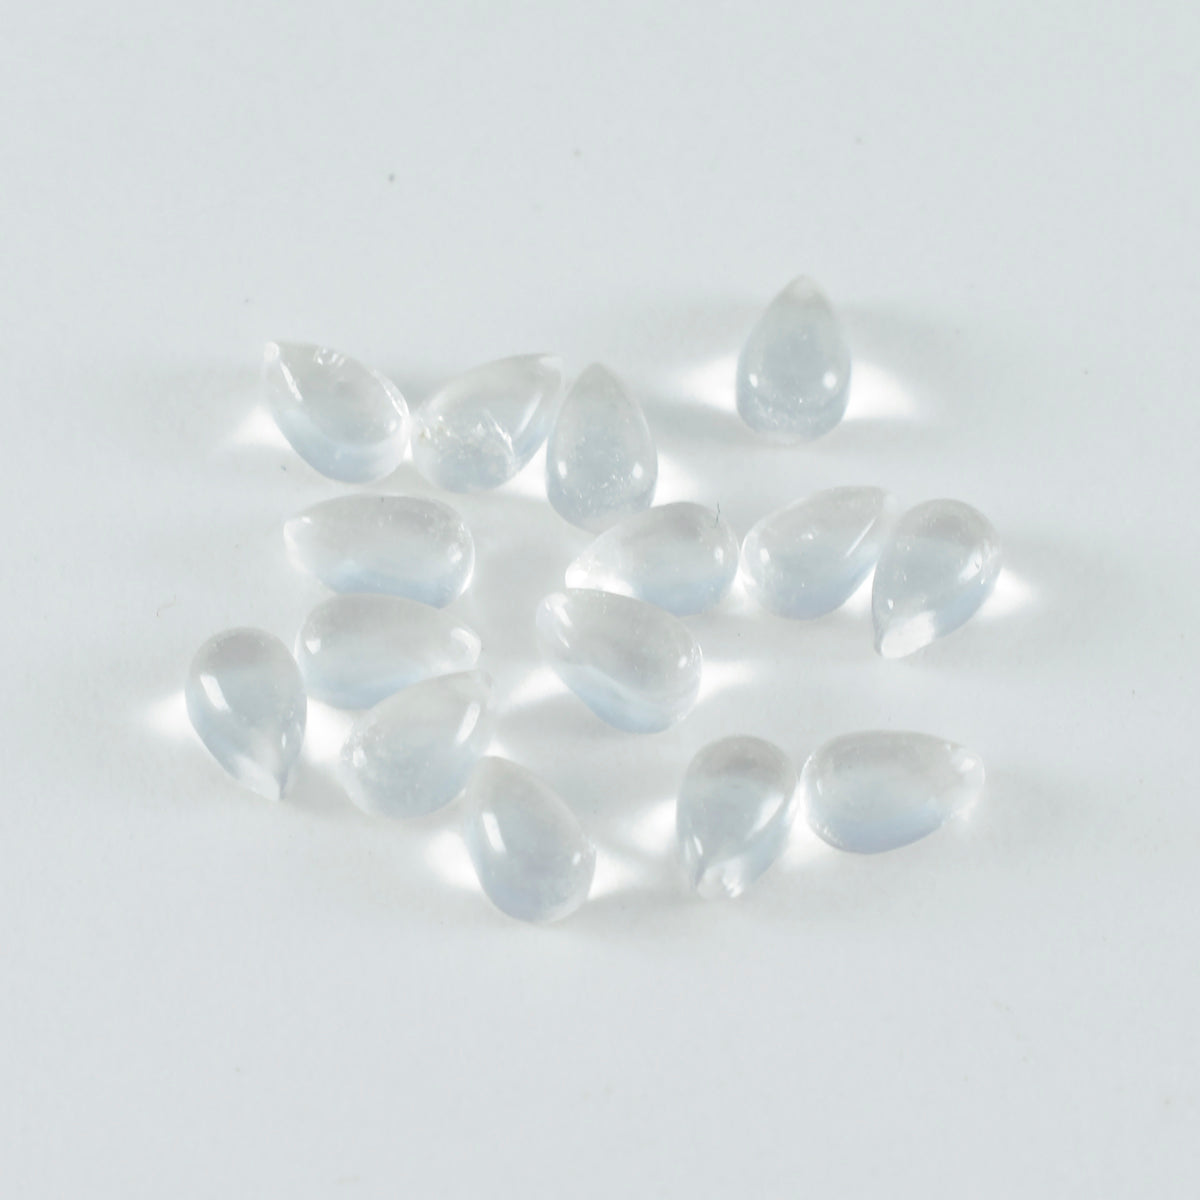 Riyogems 1pc cabochon de quartz en cristal blanc 5x7mm forme de poire superbe qualité pierre précieuse en vrac